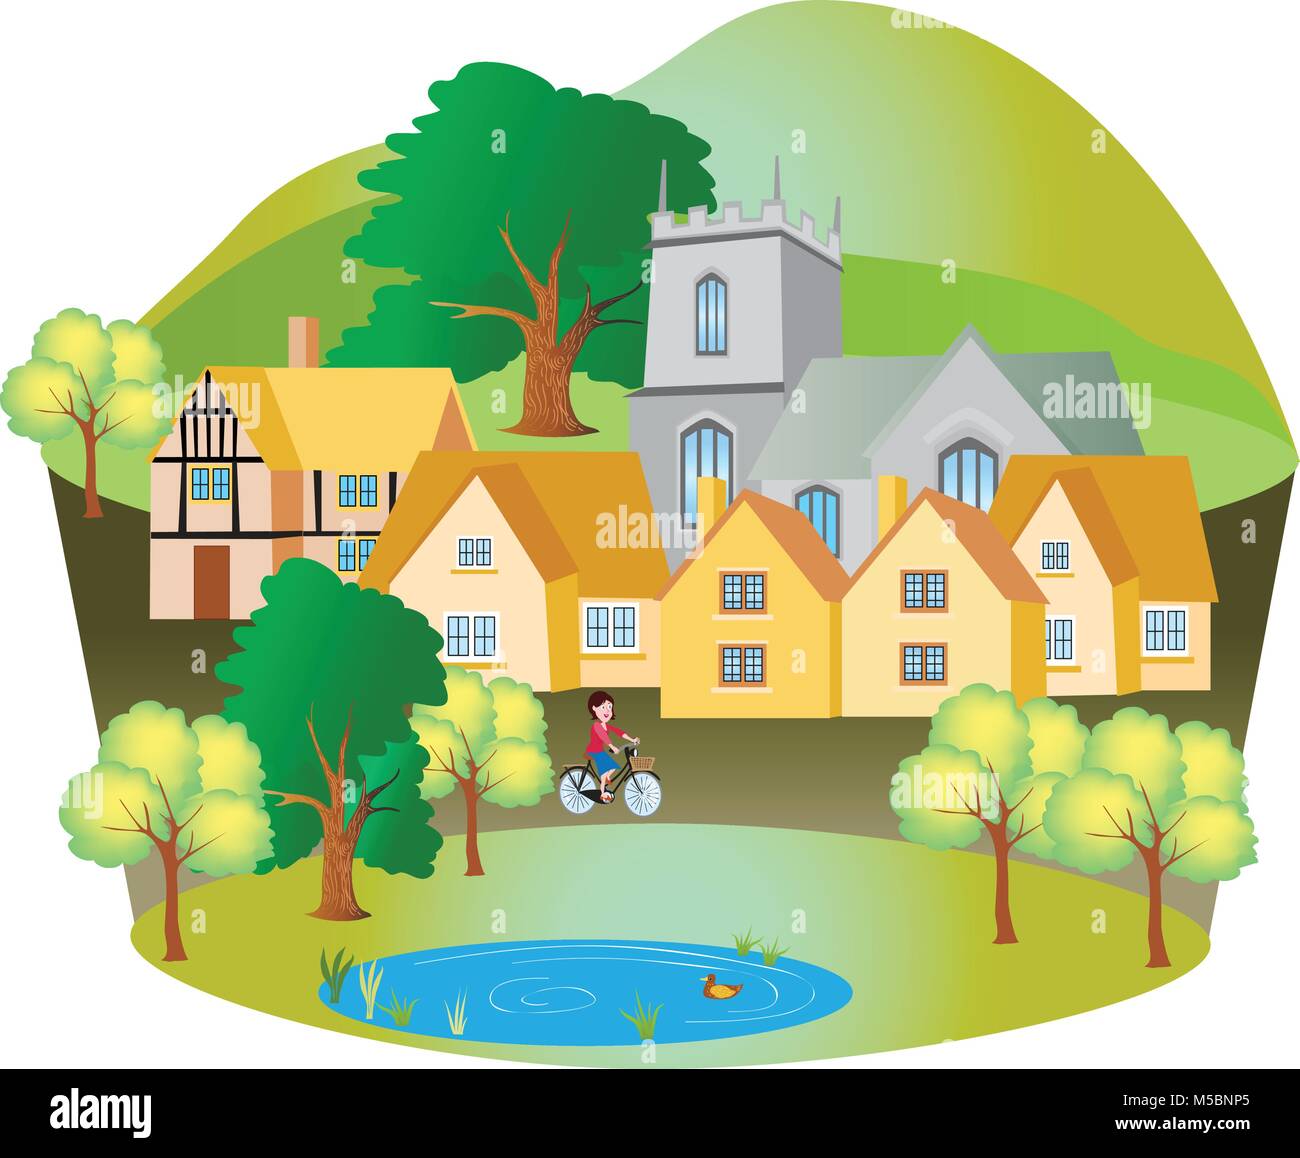 Ein Cartoon englischen Dorf mit einer Kirche, malerische Häuser, und ein Dorf Ententeich. Eine große Eibe und eine Dame Radfahrer. Stock Vektor